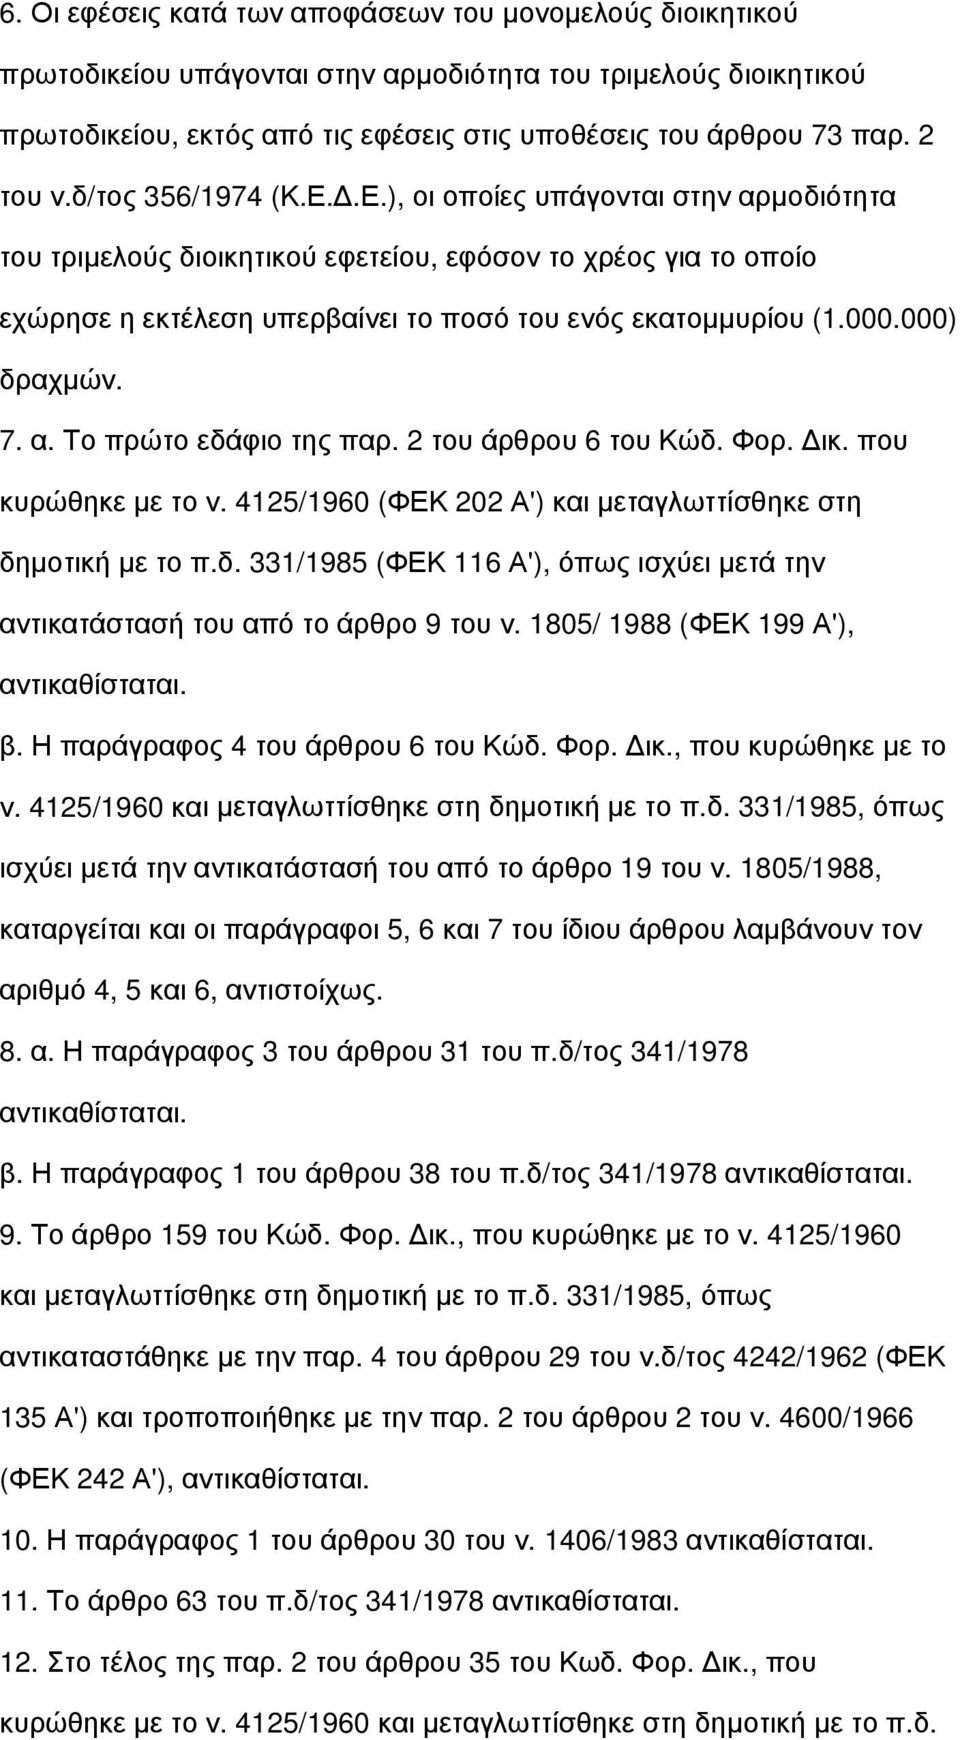 000.000) δραχμών. 7. α. Το πρώτο εδάφιο της παρ. 2 του άρθρου 6 του Κώδ. Φορ. Δικ. που κυρώθηκε με το ν. 4125/1960 (ΦΕΚ 202 Α') και μεταγλωττίσθηκε στη δημοτική με το π.δ. 331/1985 (ΦΕΚ 116 Α'), όπως ισχύει μετά την αντικατάστασή του από το άρθρο 9 του ν.